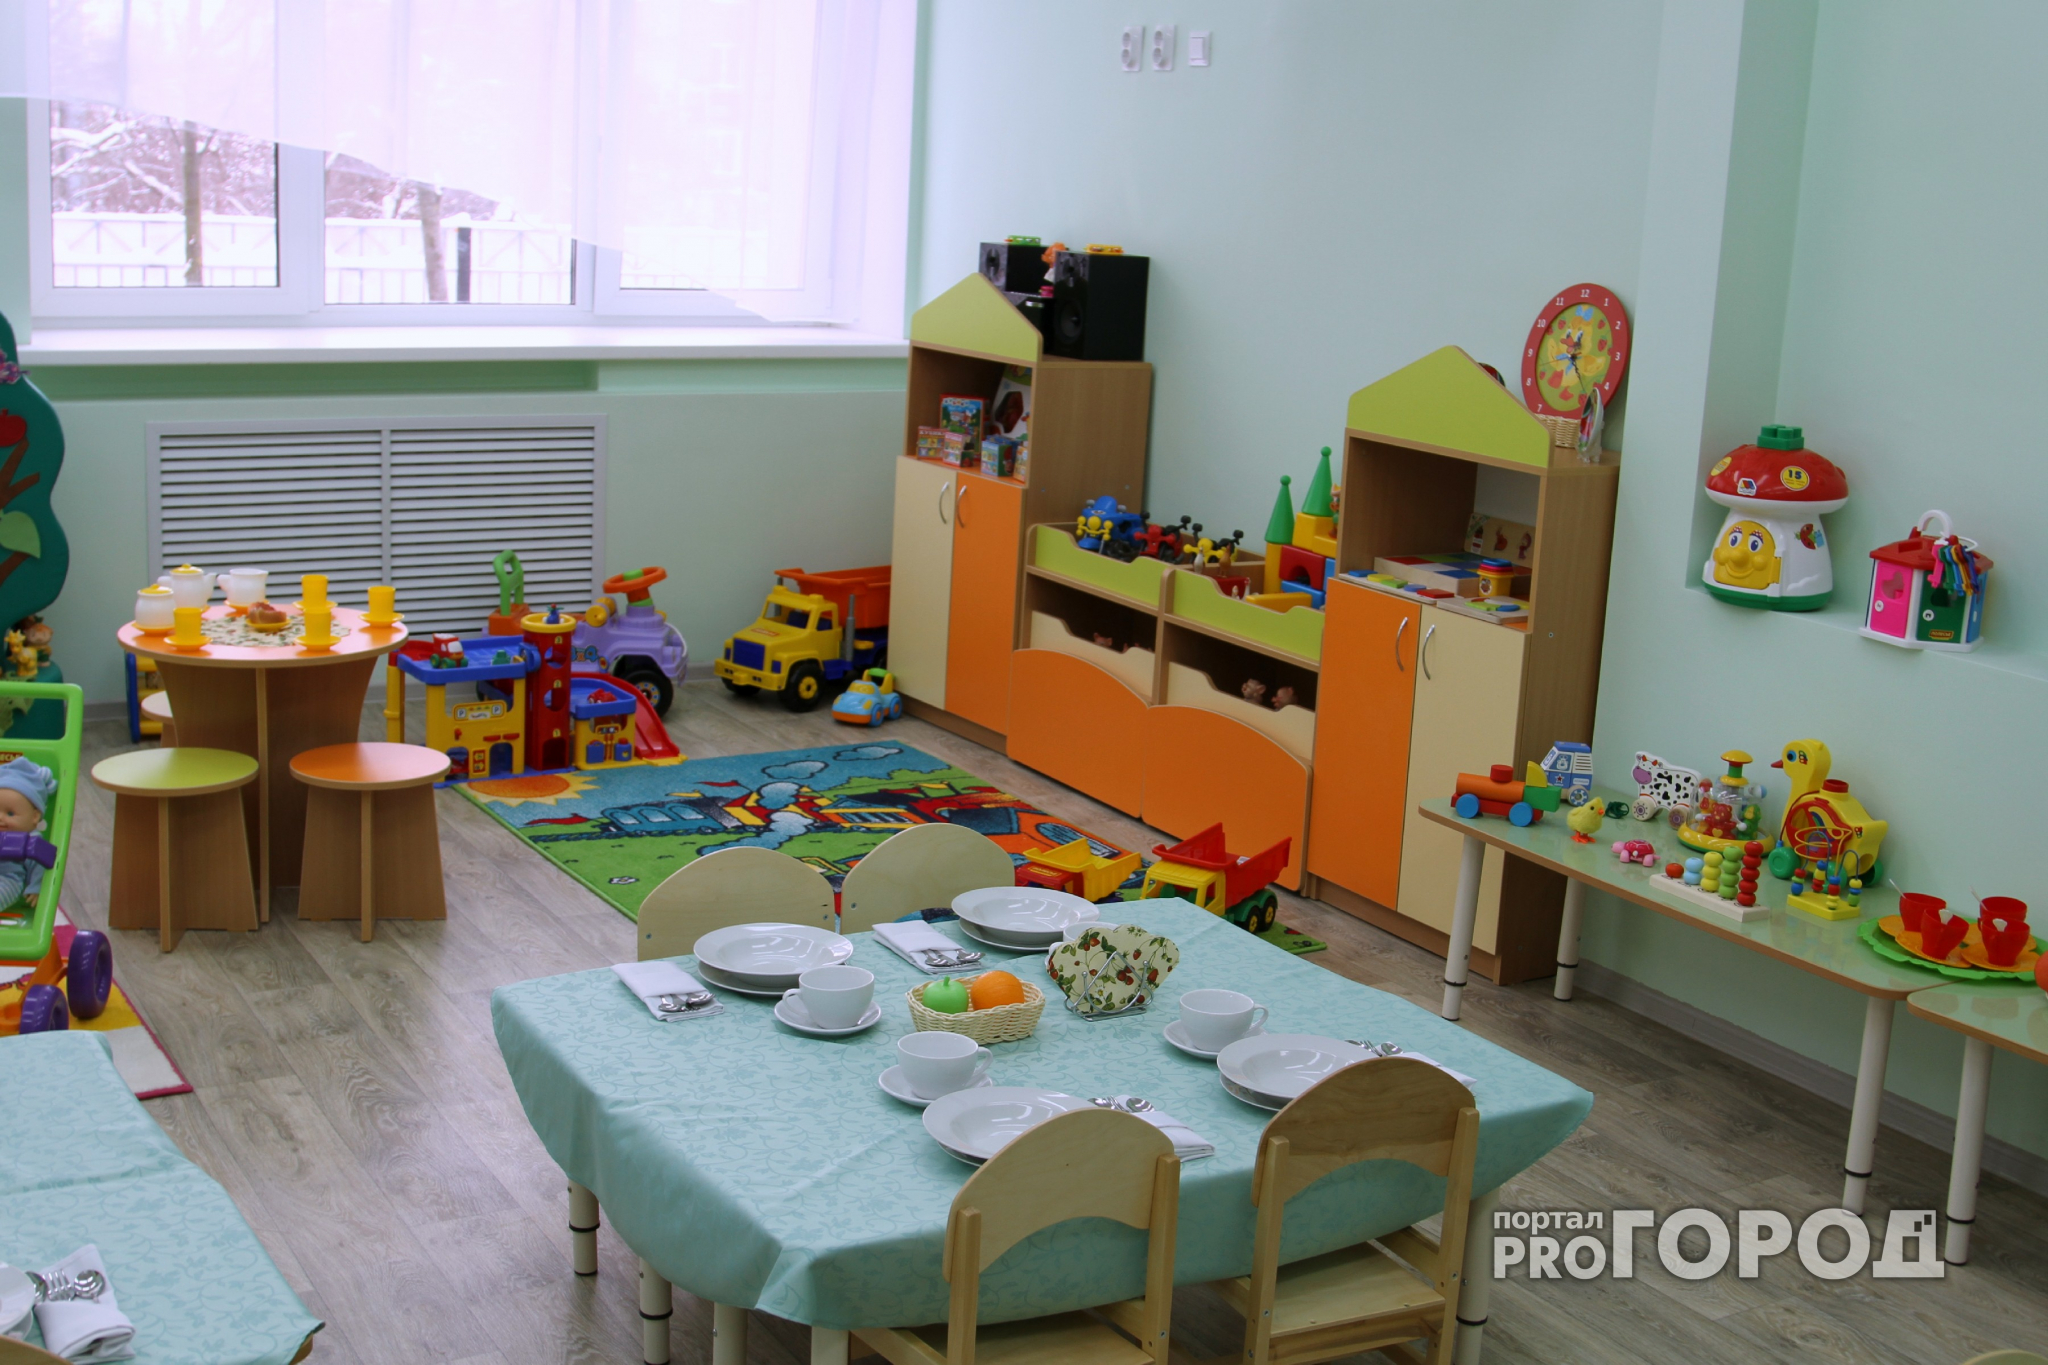 Нижегородские школы и детские сады будут страховать имущество